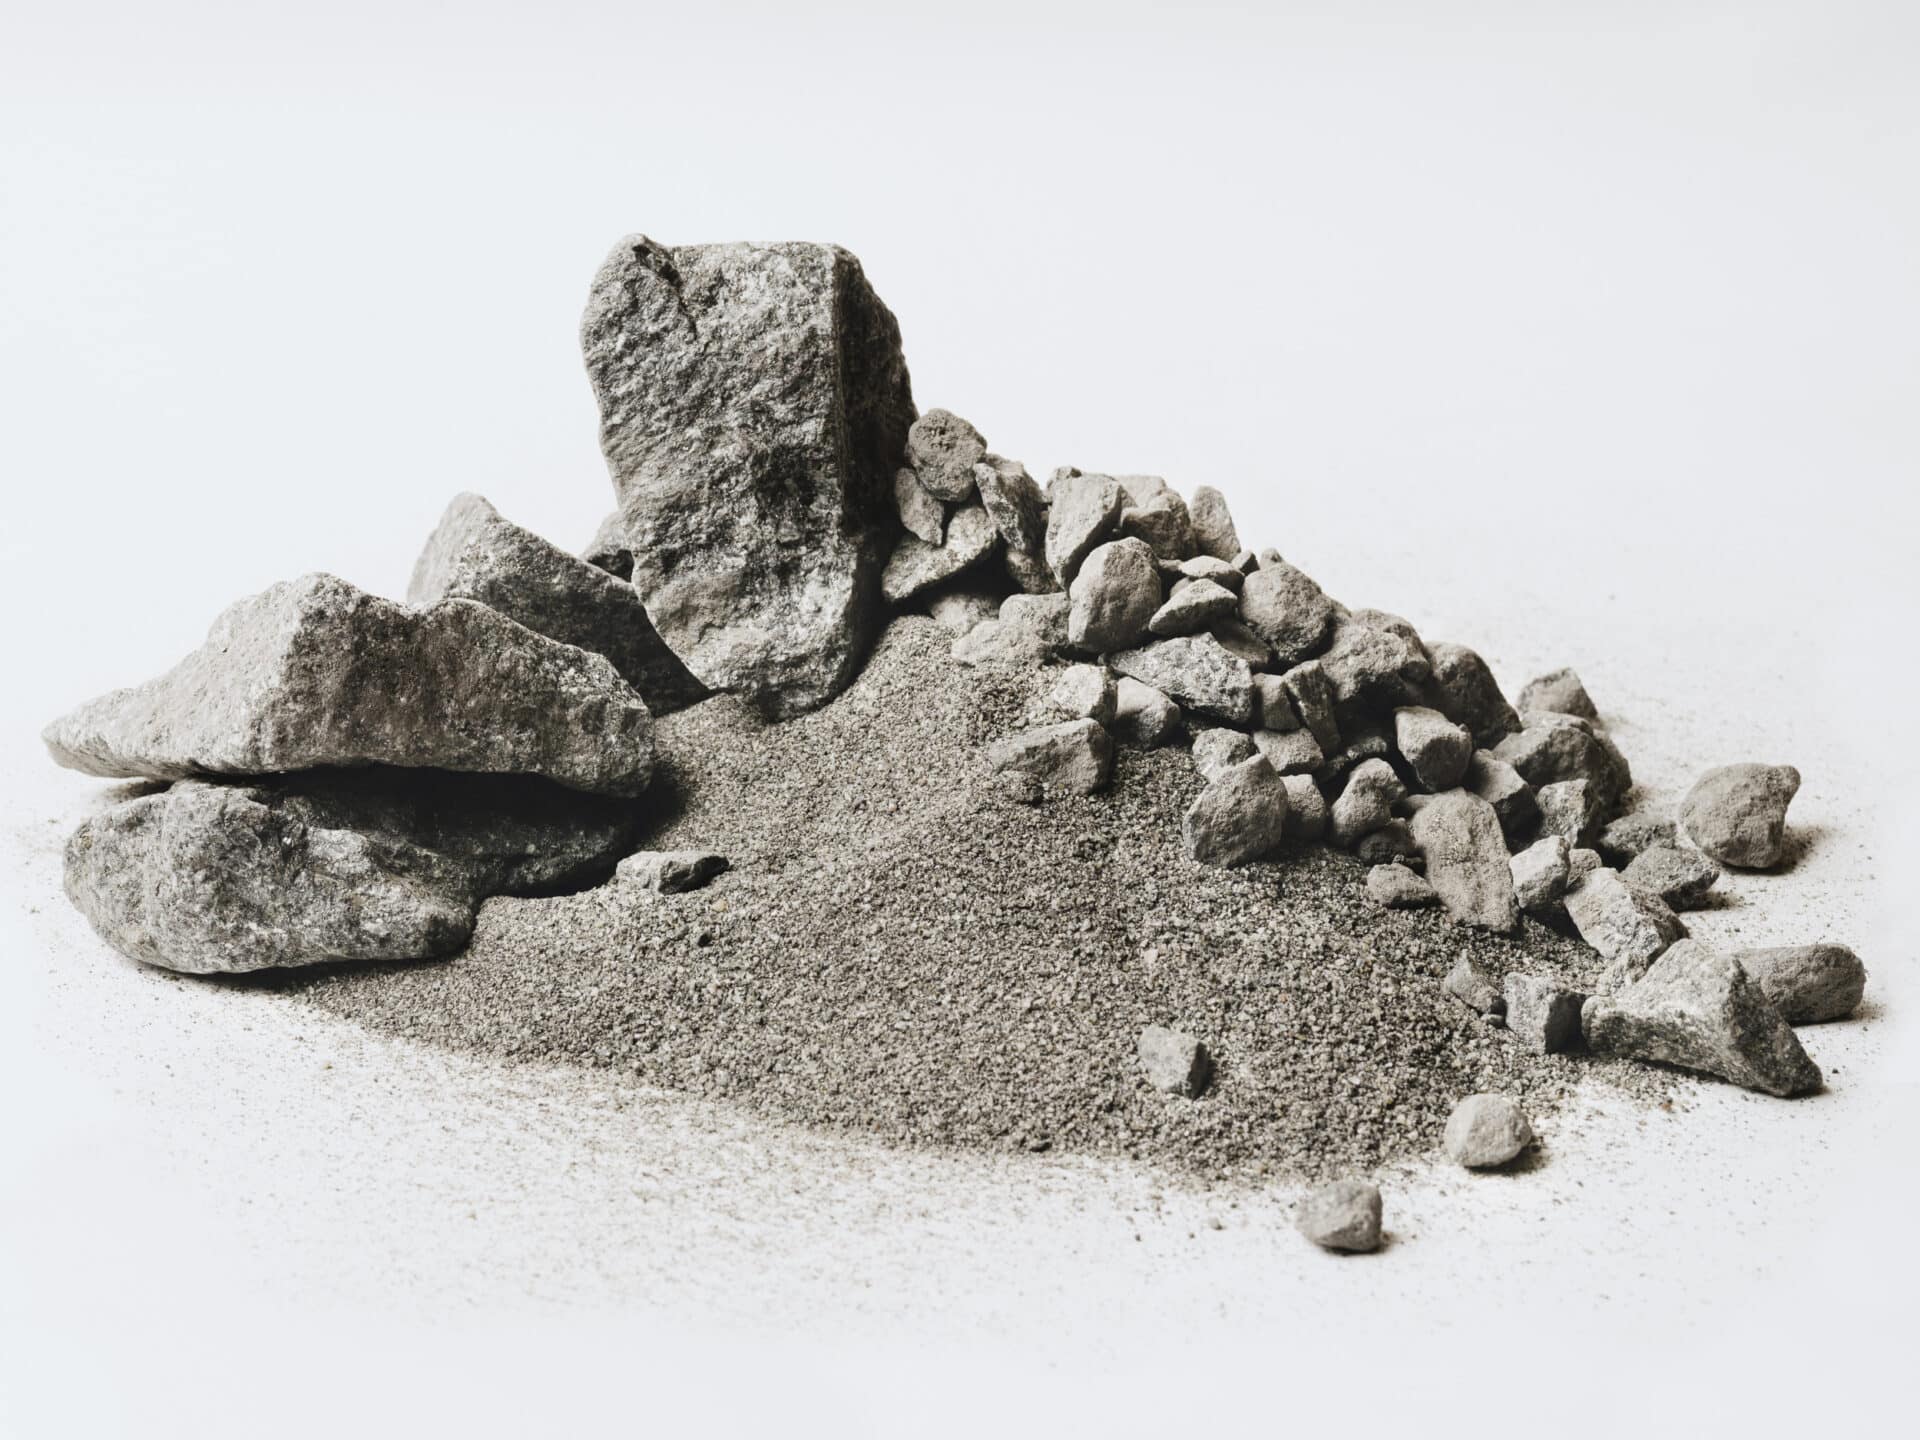 Selskapet SafeRock skal lage betong ved hjelp av gruveavfall. Bildet viser avgangsmassen og
bergarten noritt fra gruveselskapet Titania. Foto: OiOiOi